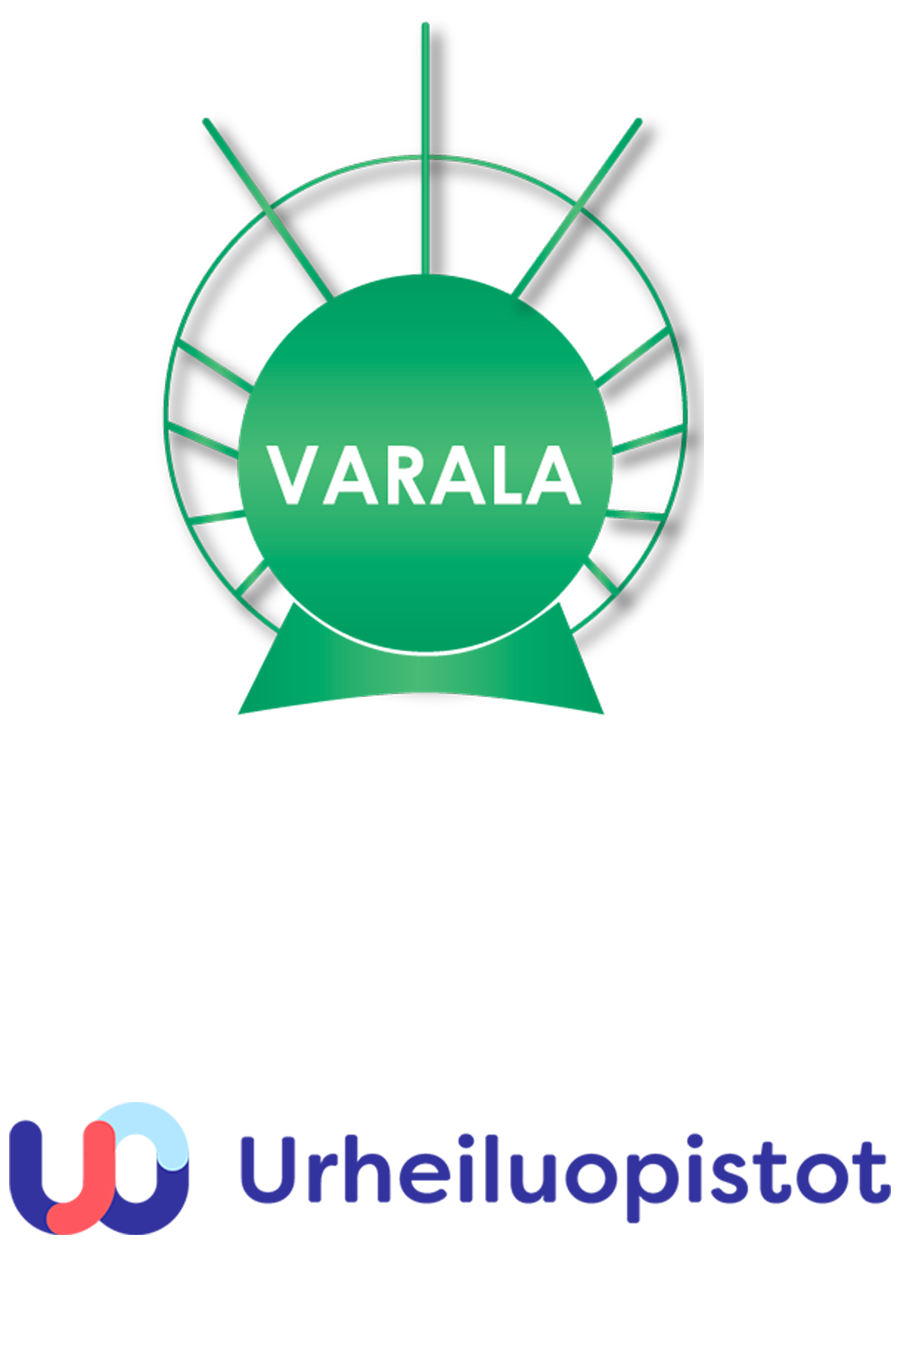 Varala